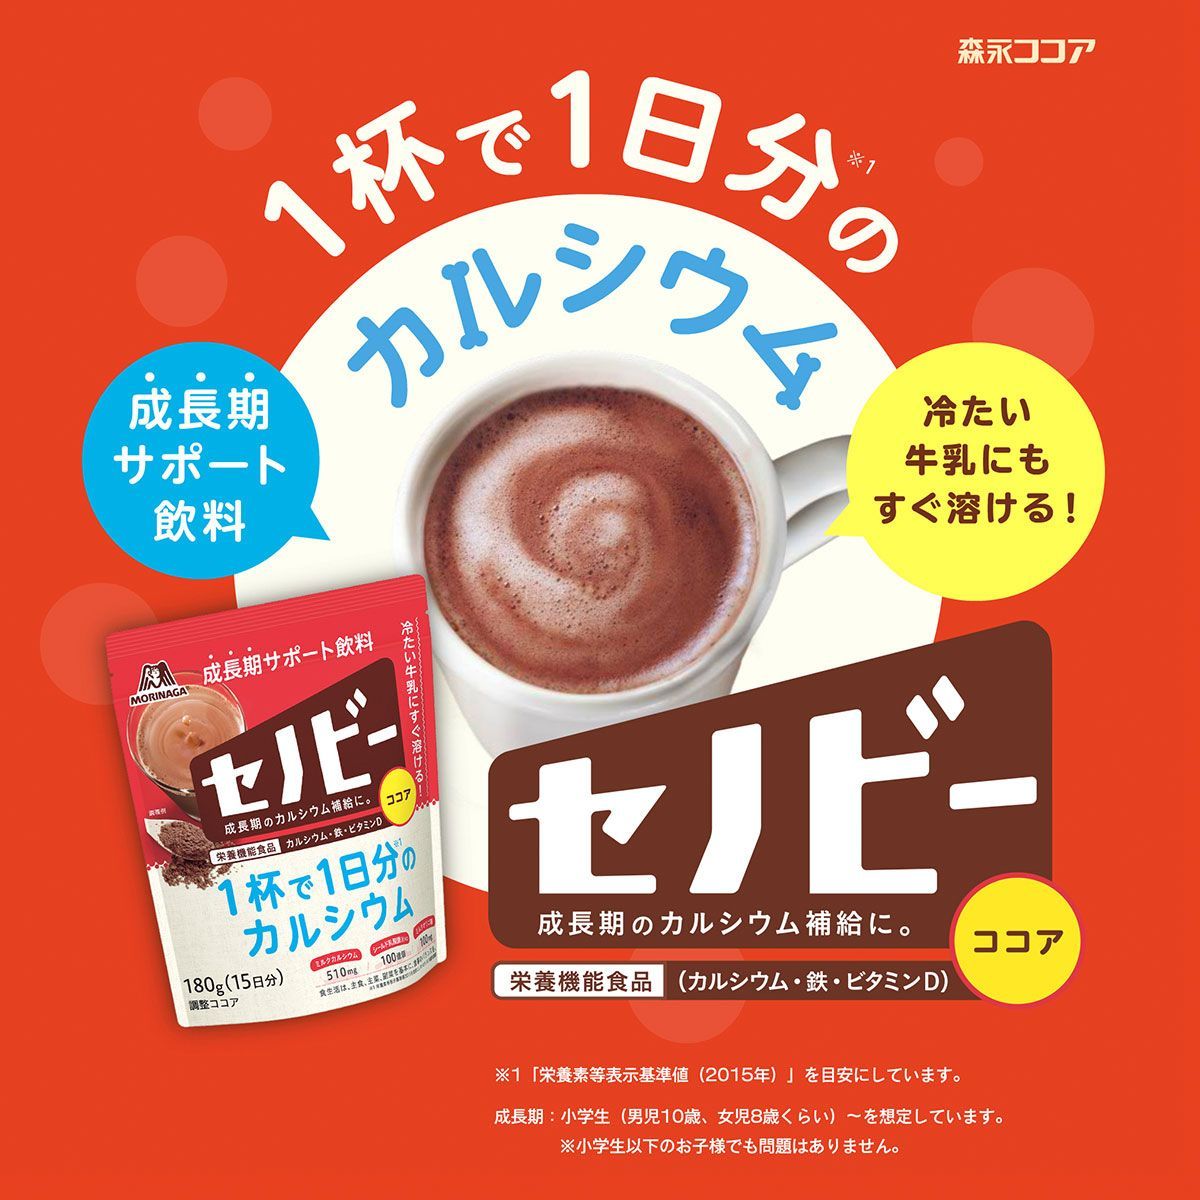 森永製菓 セノビー 84g 送料無料 ココア 飲料 粉末 栄養機能食品 せのびー 調整ココア カルシウム